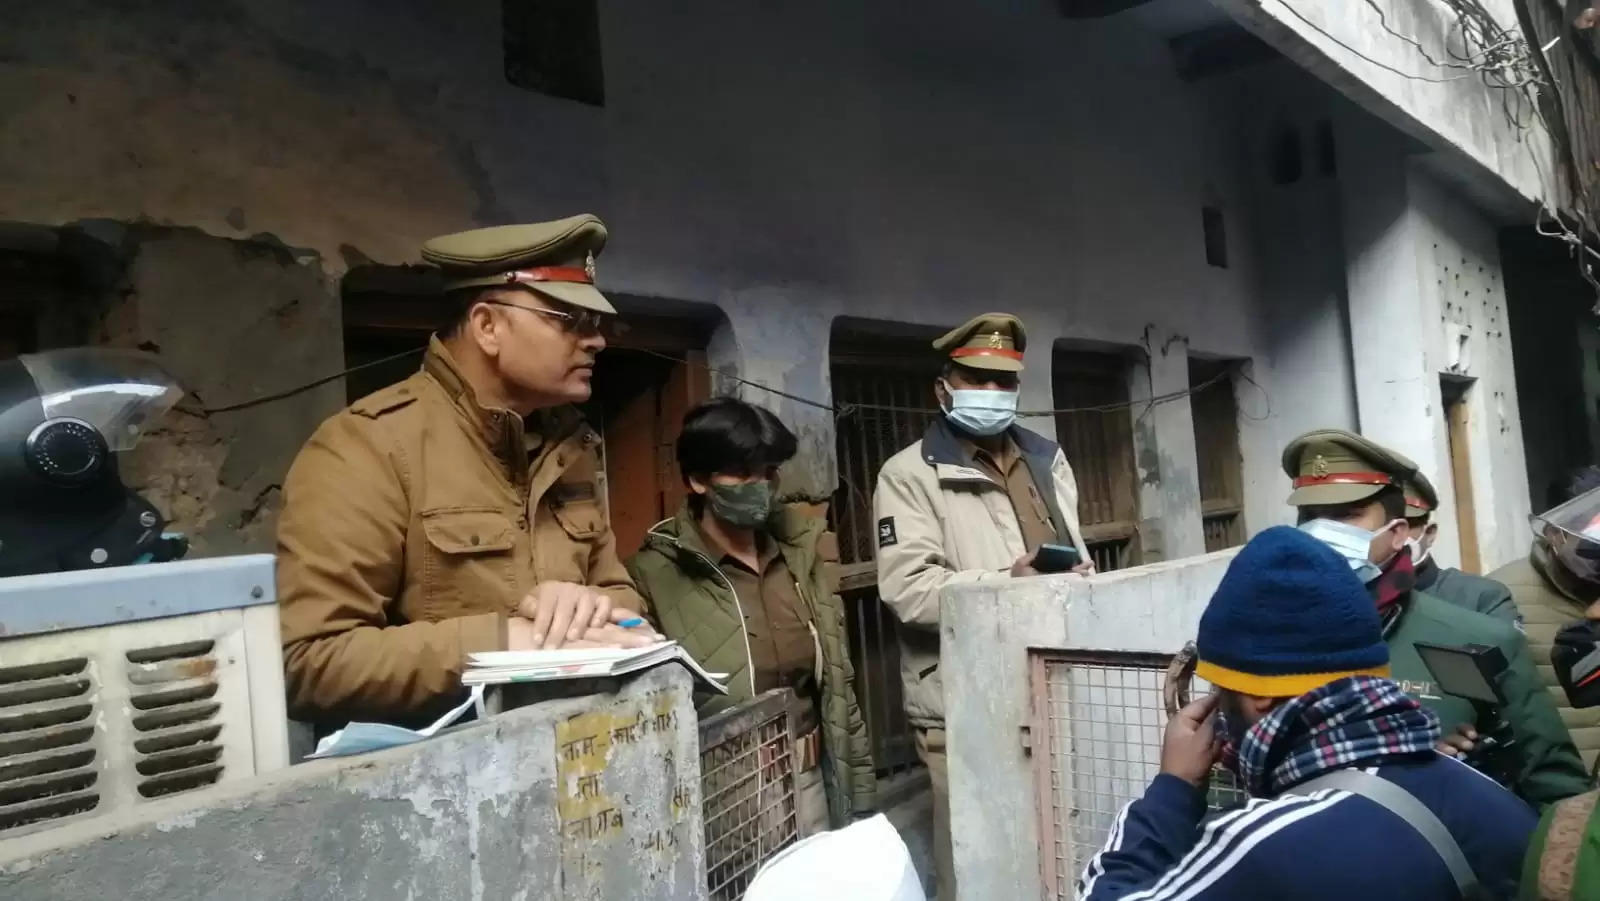 Varanasi News: वाराणसी में बंद कमरे में पति-पत्नी का शव मिलने से हड़कंप, जांच में जुटी पुलिस